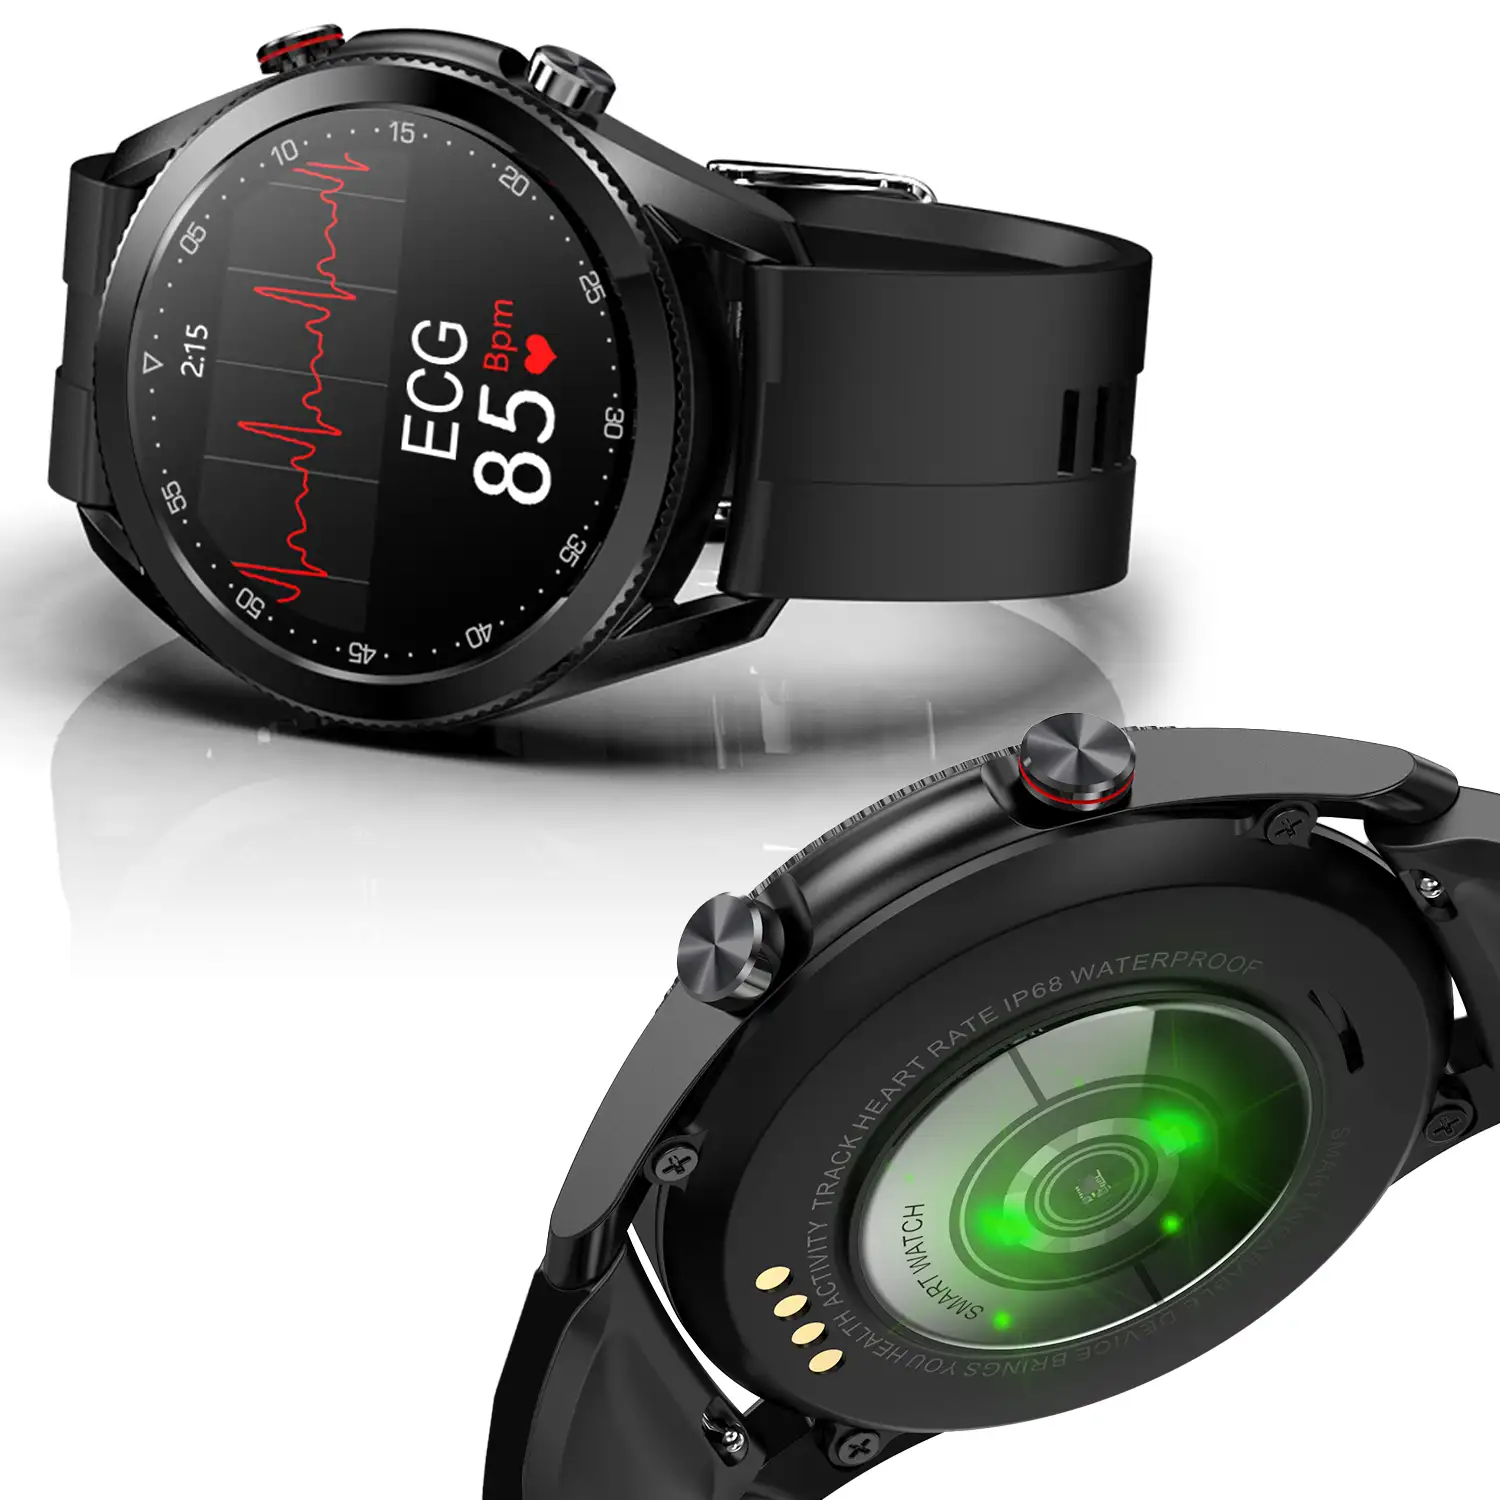 Smartwatch L19 con notificaciones de aplicaciones. Monitor de salud con ECG, monitor de tensión y de oxígeno en sangre.